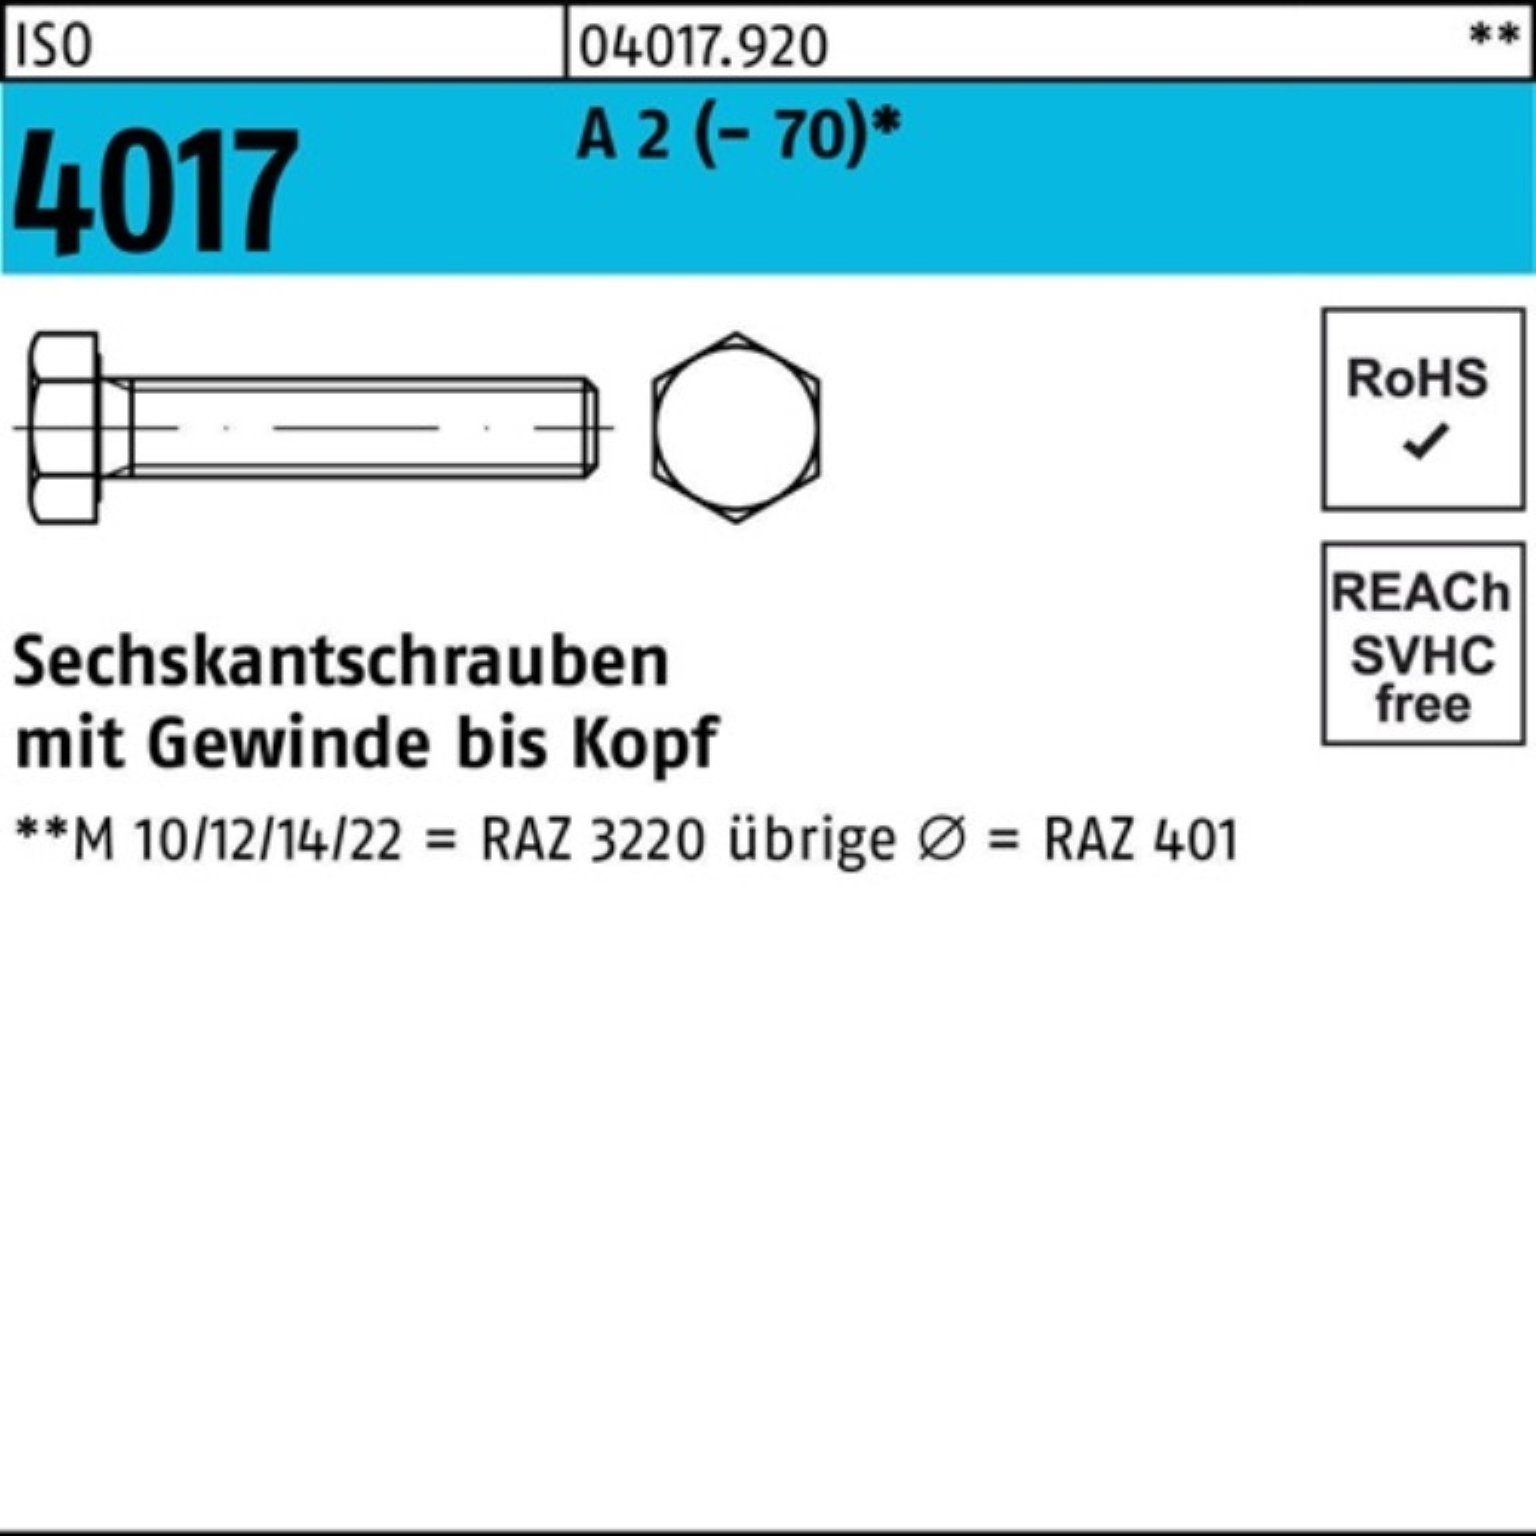 Bufab Sechskantschraube 200er Pack Sechskantschraube ISO 4017 VG M8x 16 A 2 (70) 200 Stück